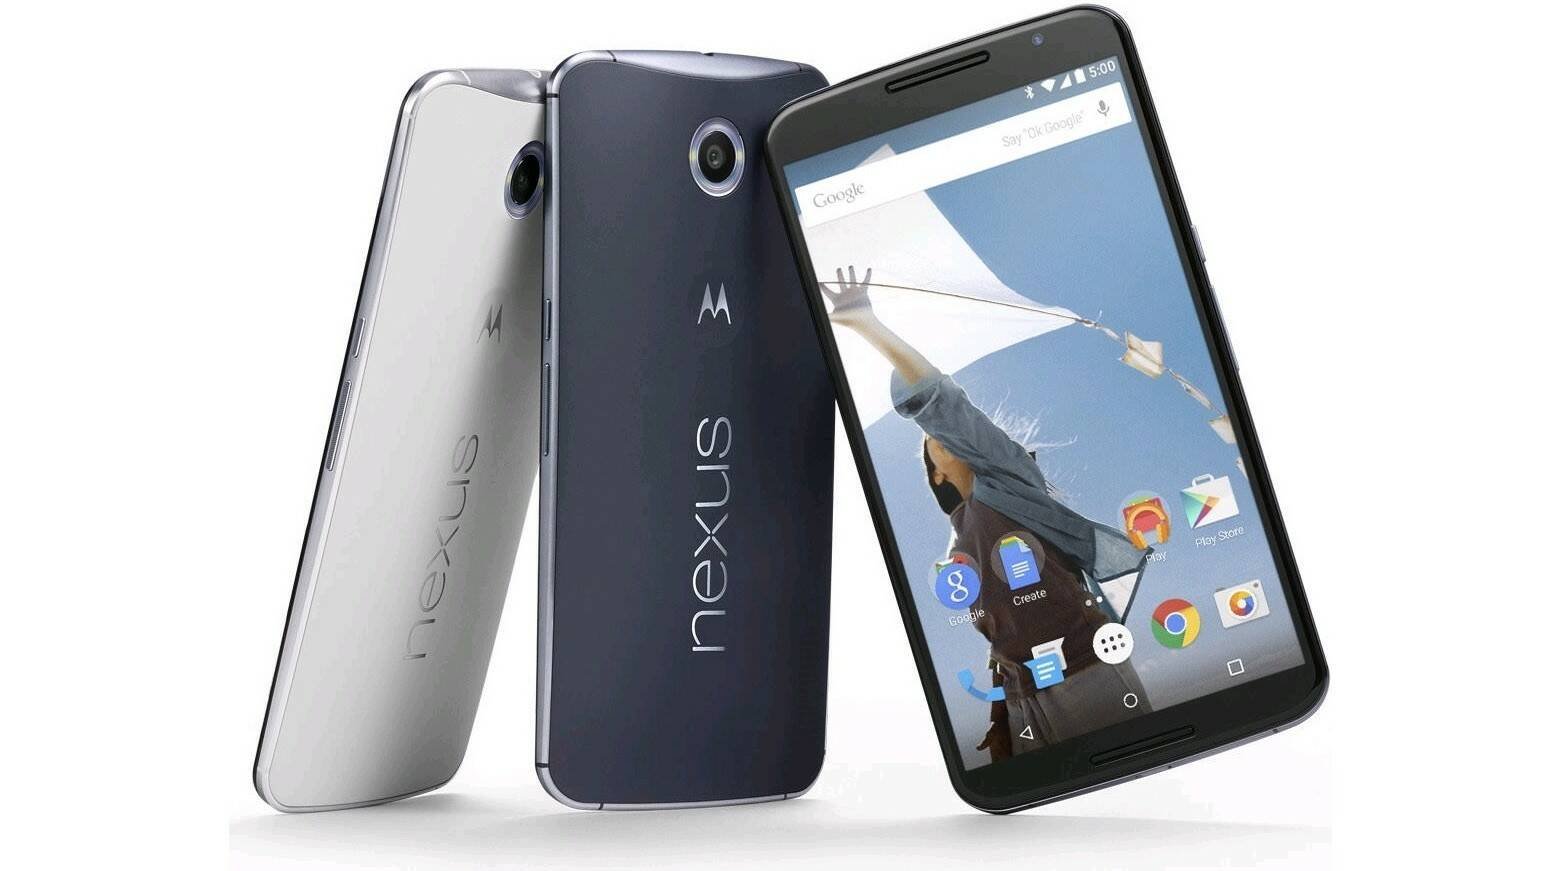 Immagine di Google Nexus 6 aveva un lettore di impronte, Apple ha rovinato i piani di Motorola